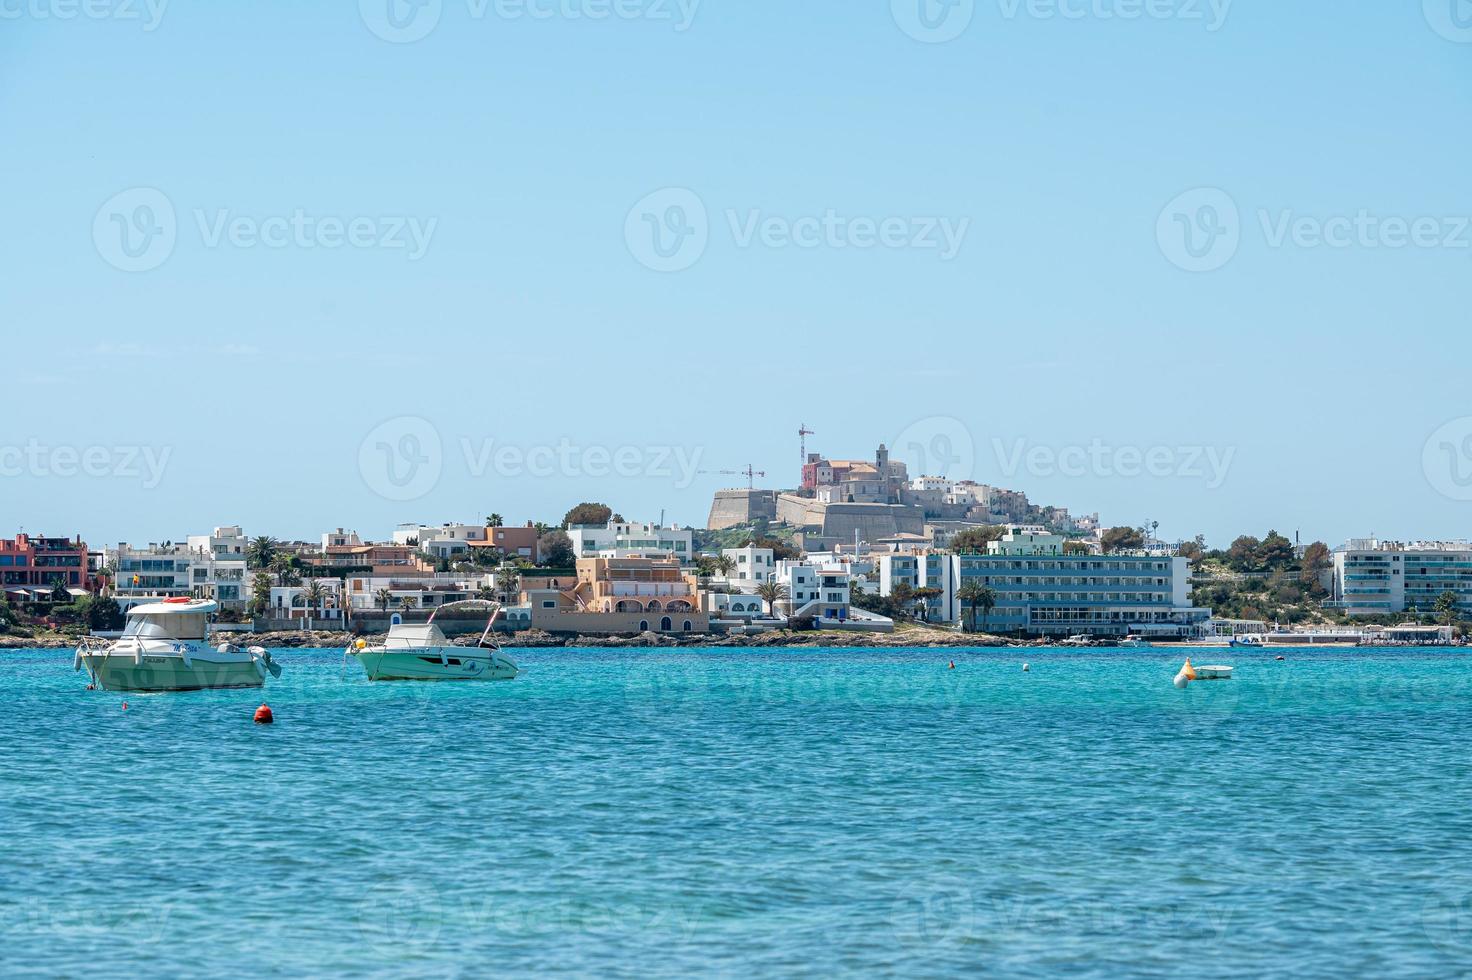 barcos nas águas azul-turquesa do mediterrâneo na baía de talamanca em ibiza, espanha. foto